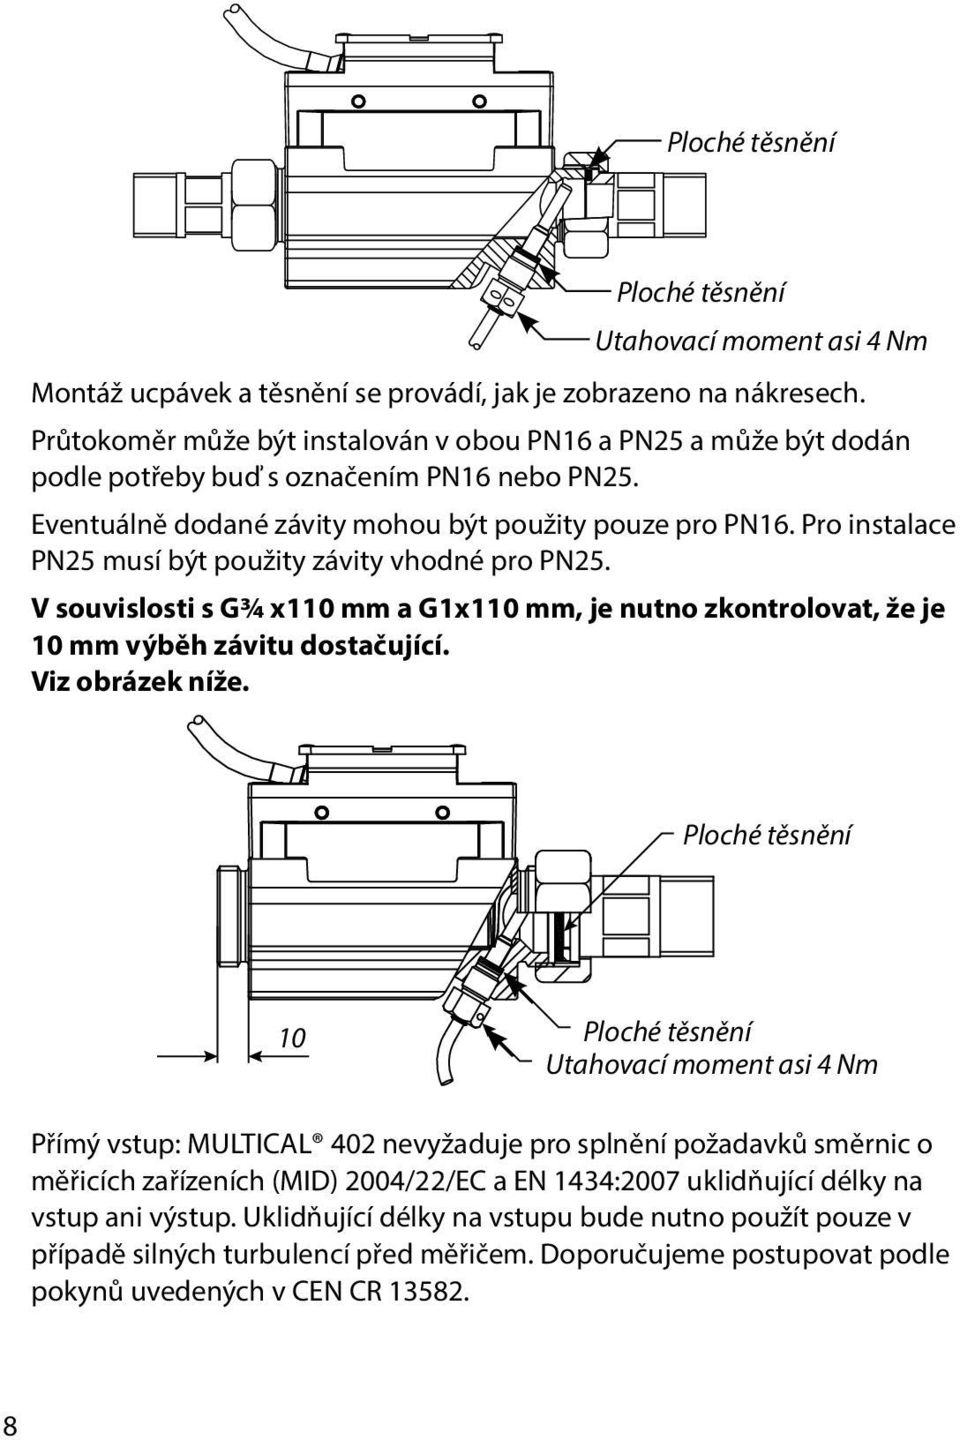 Pro instalace PN25 musí být použity závity vhodné pro PN25. V souvislosti s G¾ x110 mm a G1x110 mm, je nutno zkontrolovat, že je 10 mm výběh závitu dostačující. Viz obrázek níže.